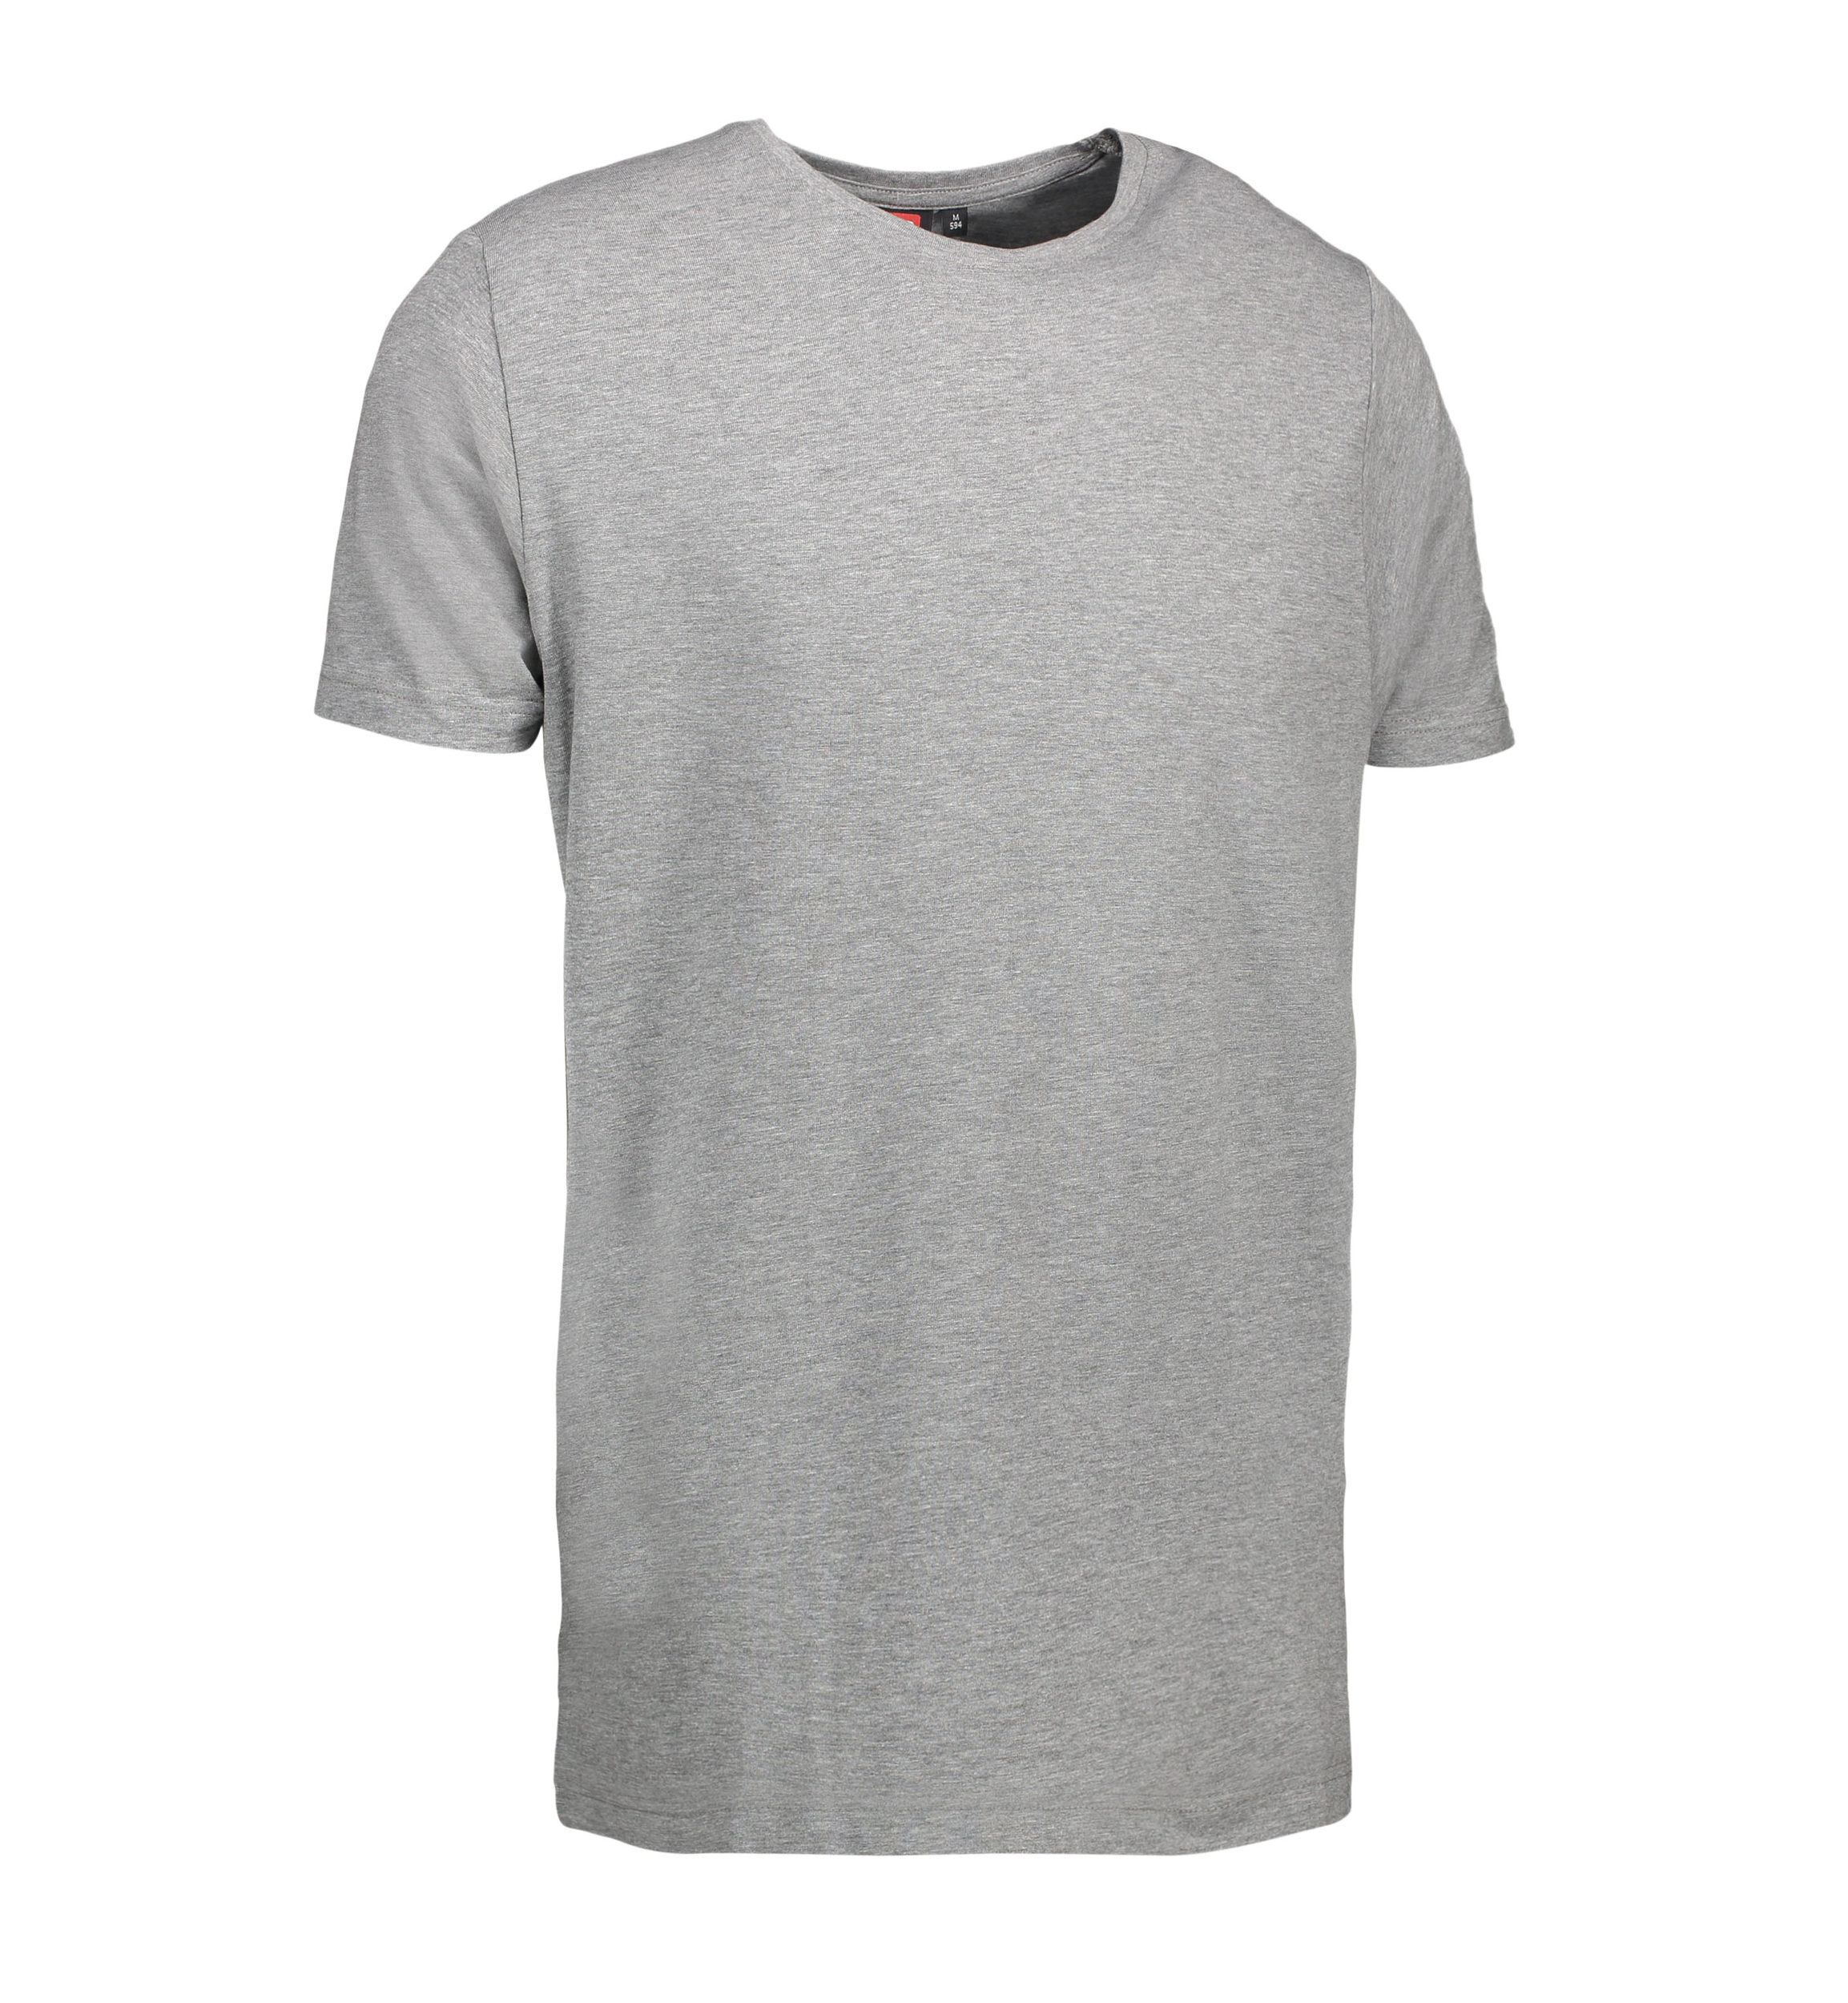 Billede af Stretch t-shirt til mænd i grå - L hos Sygeplejebutikken.dk